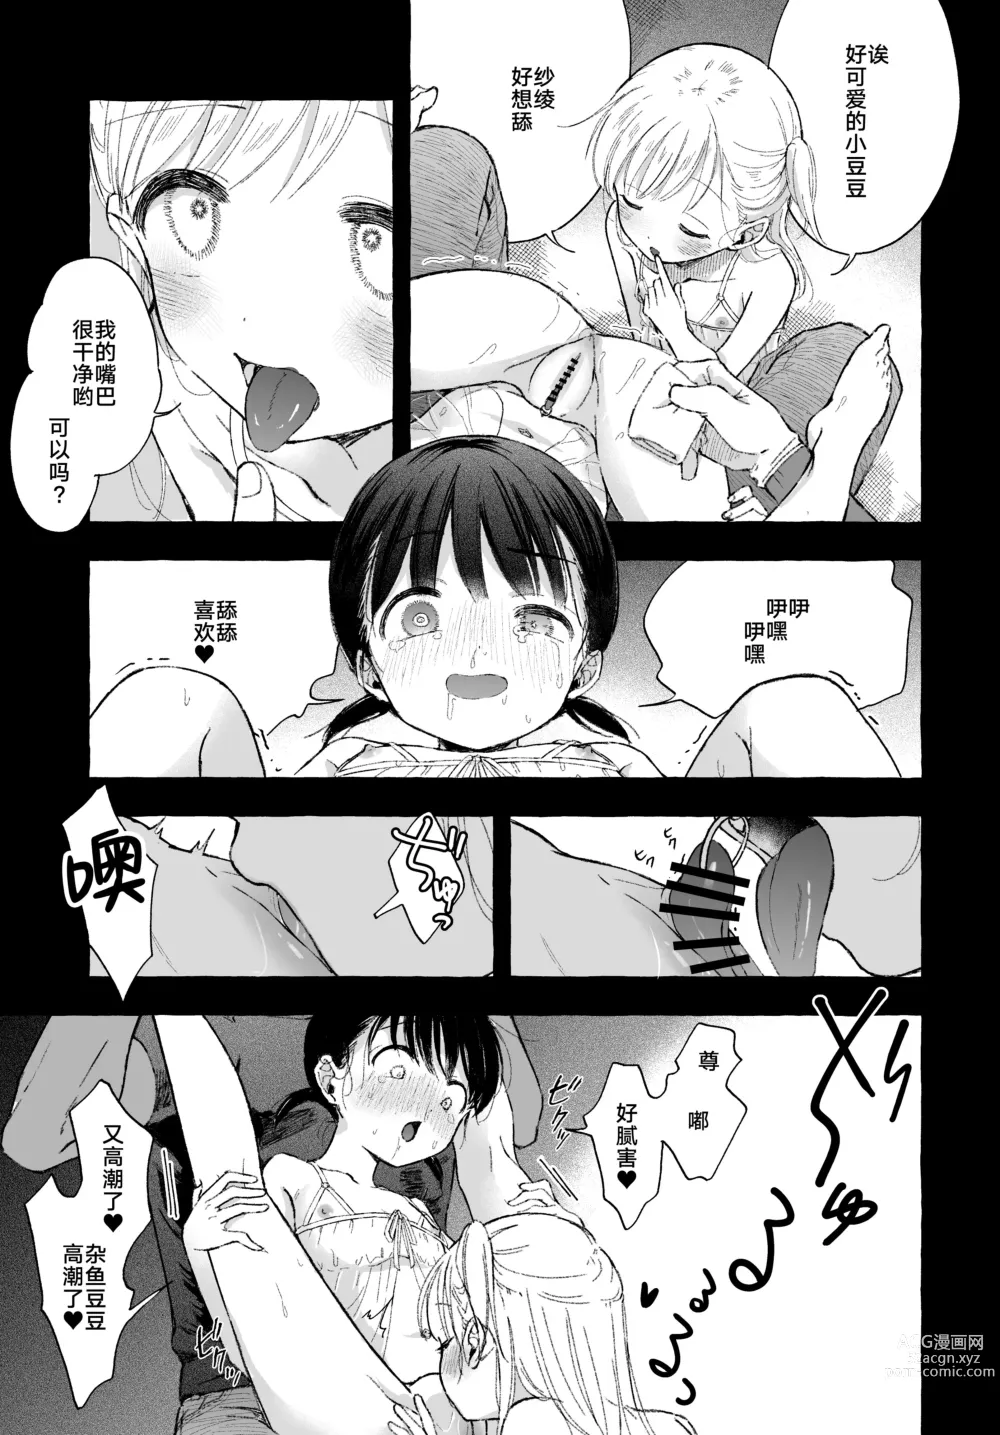 Page 31 of manga よいこのおなにー -強制発情でクリ開発-